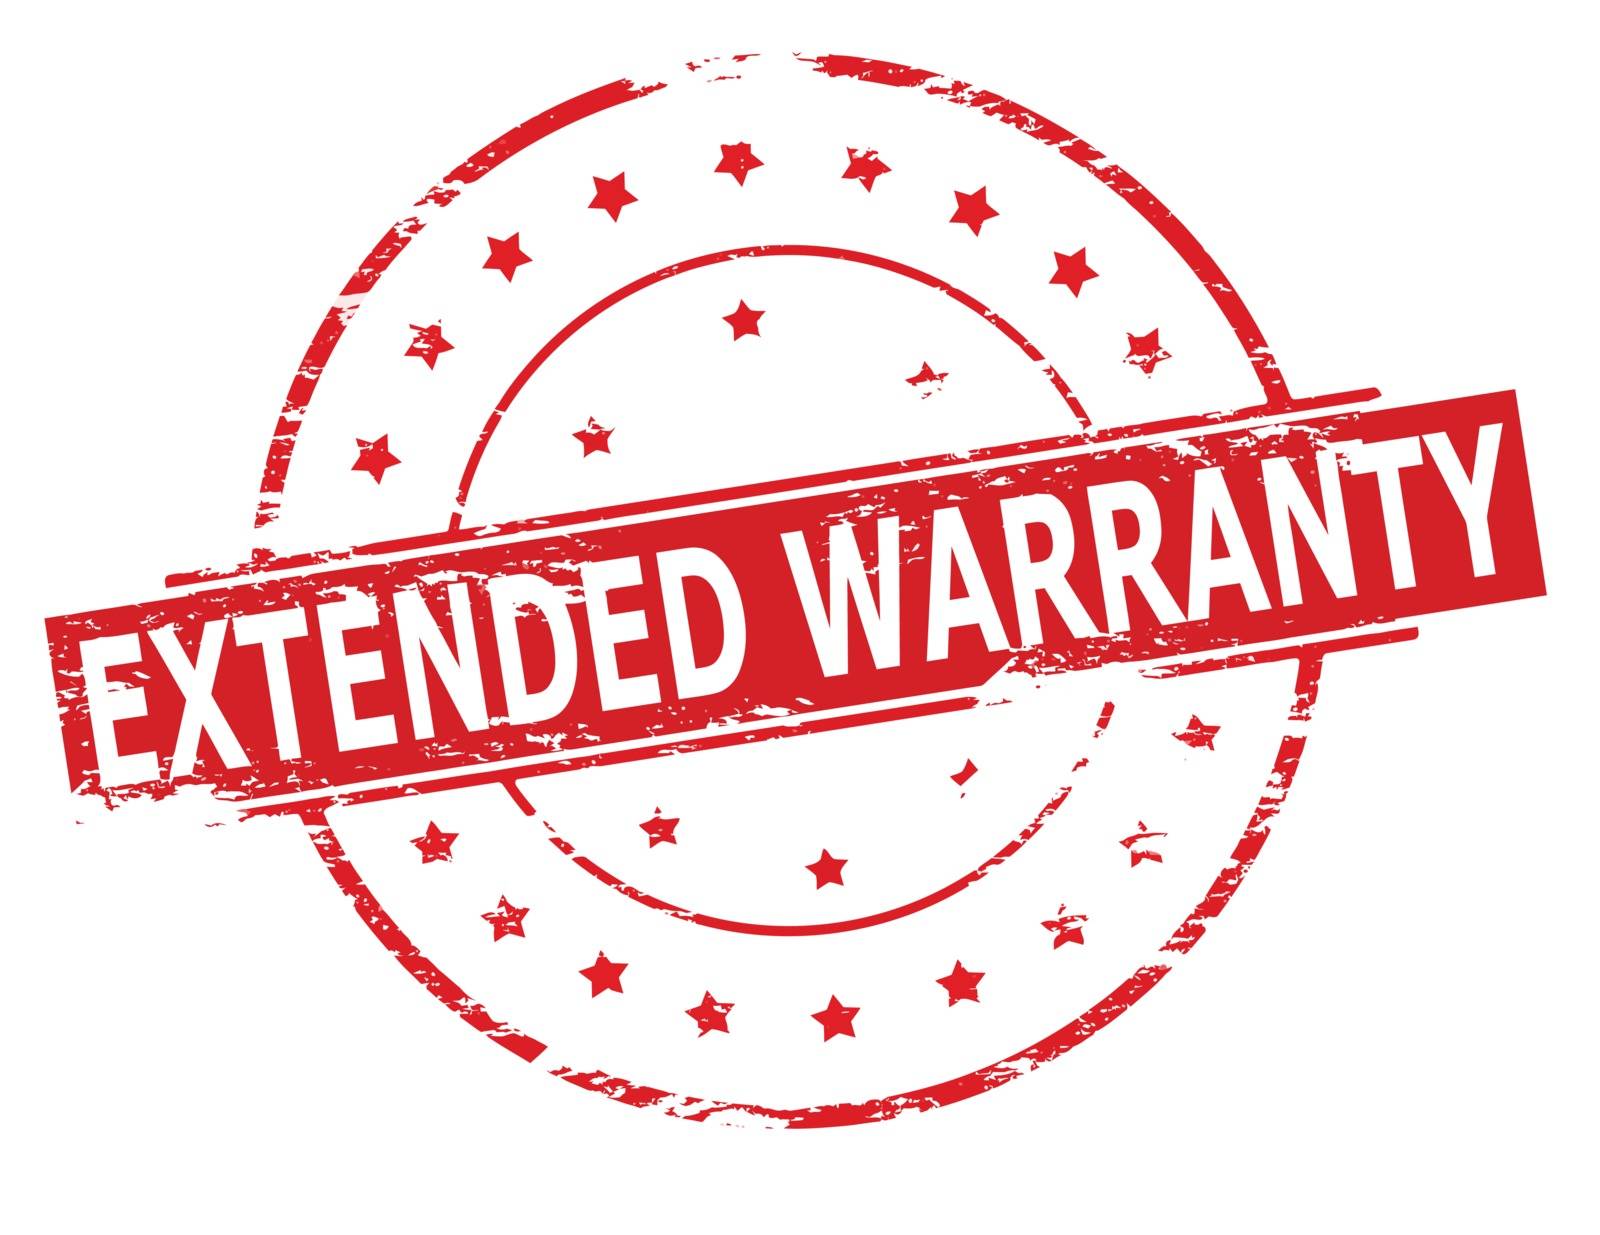 Extended warranty by carmenbobo